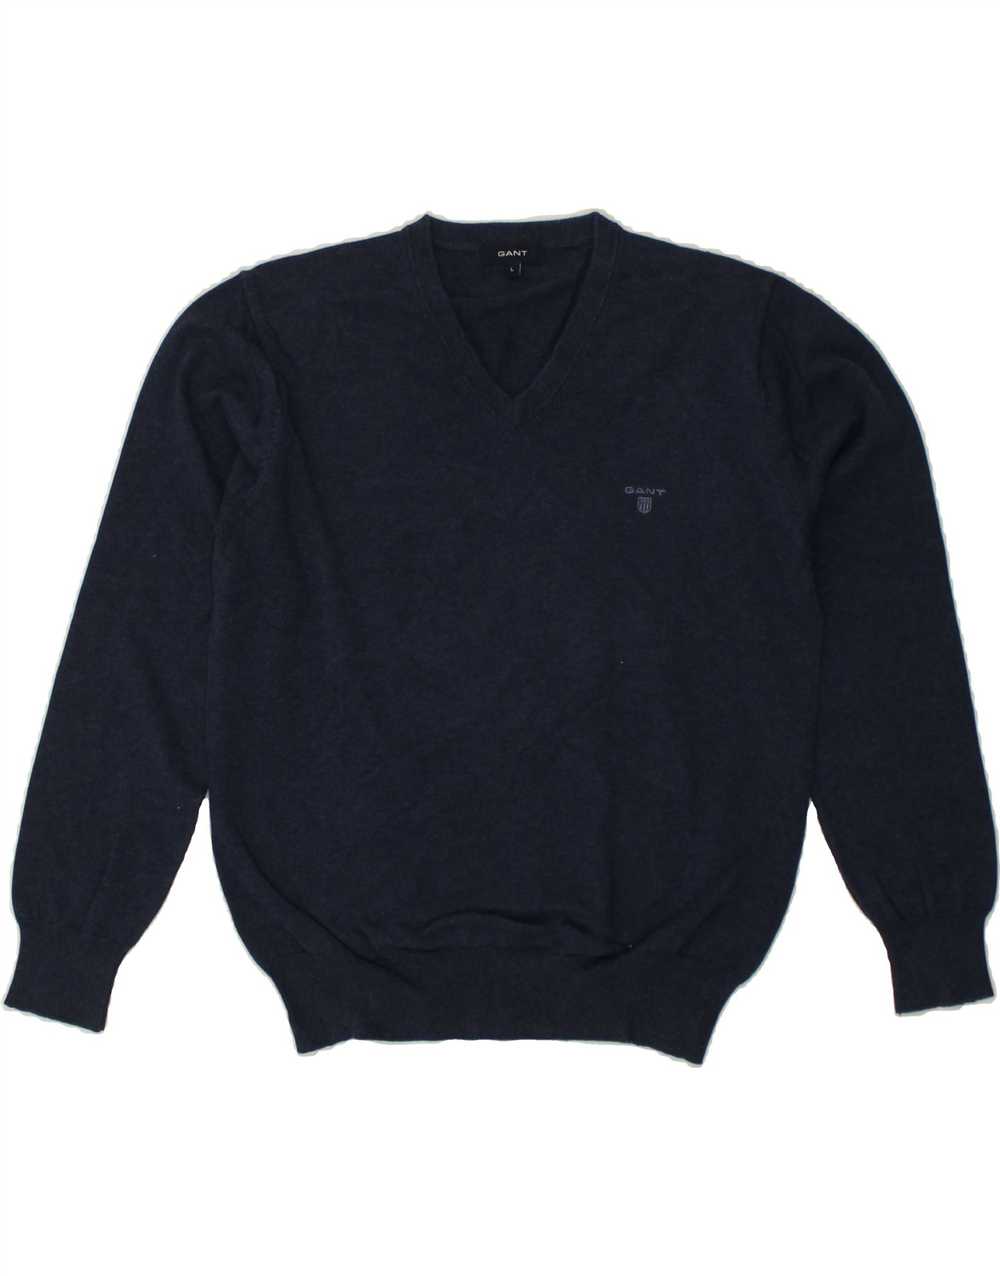 GANT Mens V-Neck Jumper Sweater Large Navy Blue C… - image 1